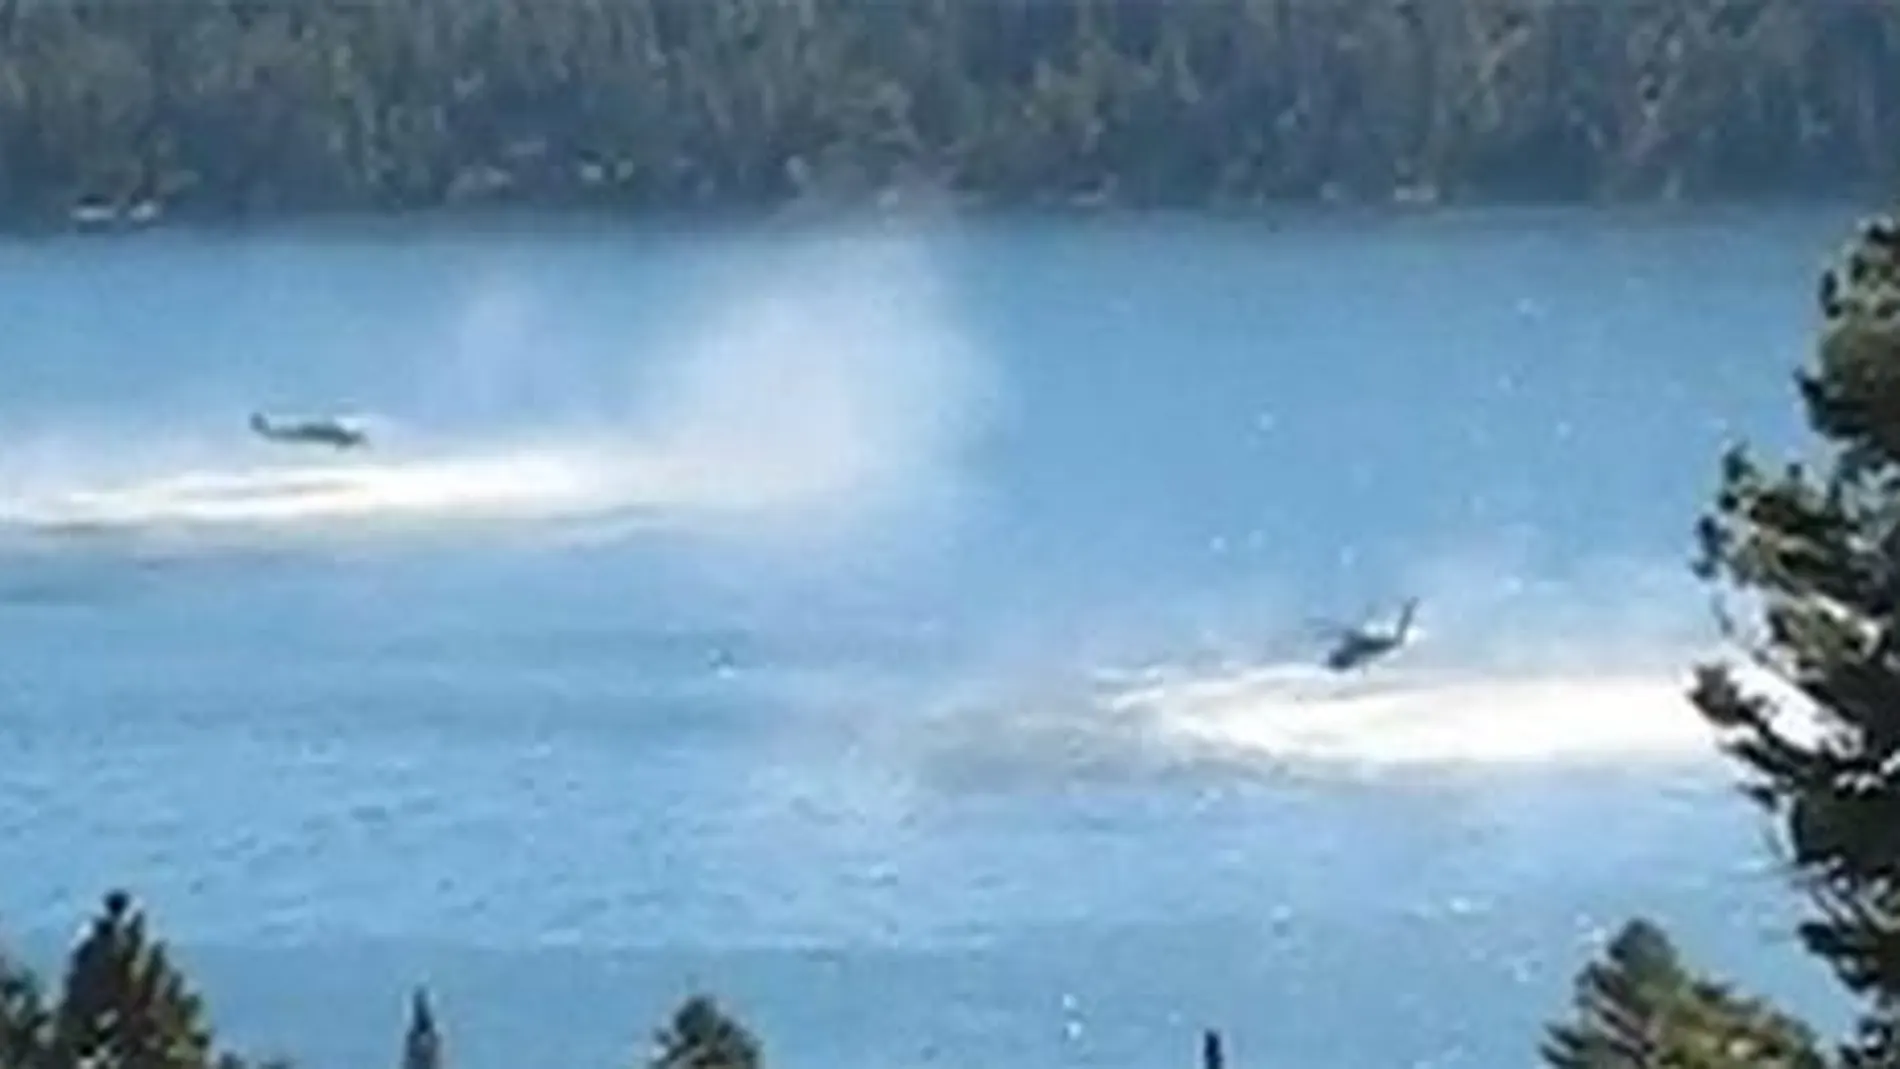 Los dos helicópteros sobrevuelan el lago Tahoe, entre California y Nevada. Uno de ellos llega a impactar en el agua